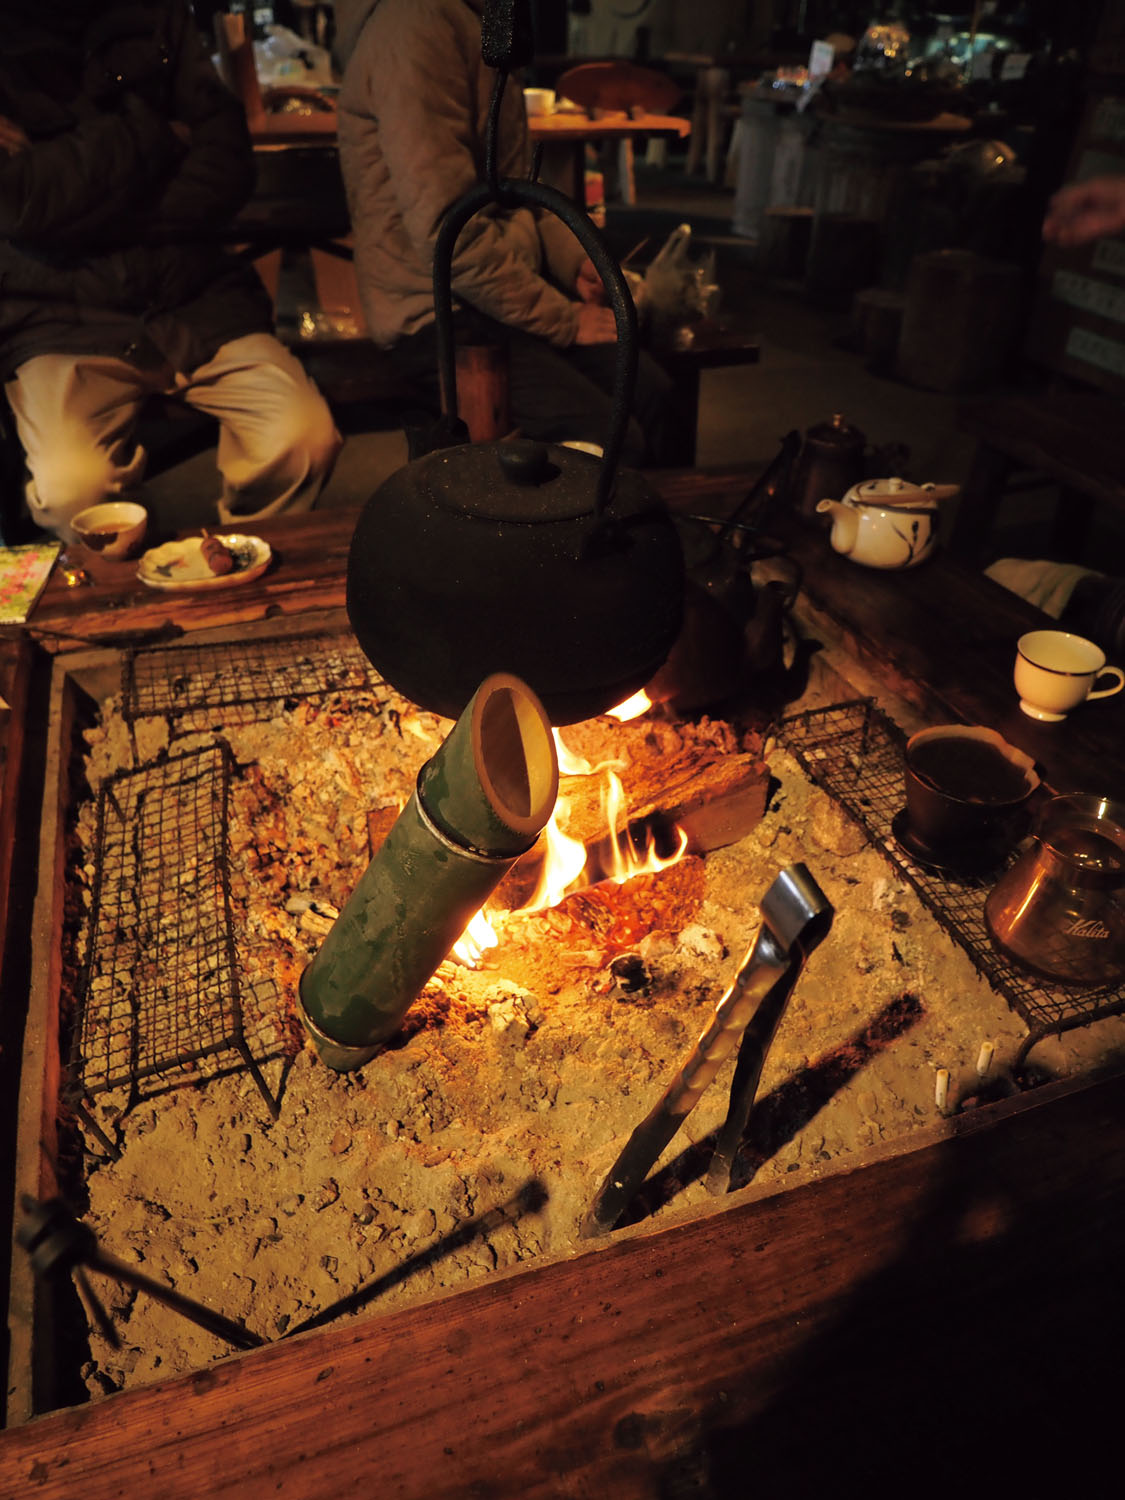 囲炉裏では自分で団子を焼いて食べられる。火のそばにある竹筒はカッポ酒で、日本酒を入れてお燗して飲む。